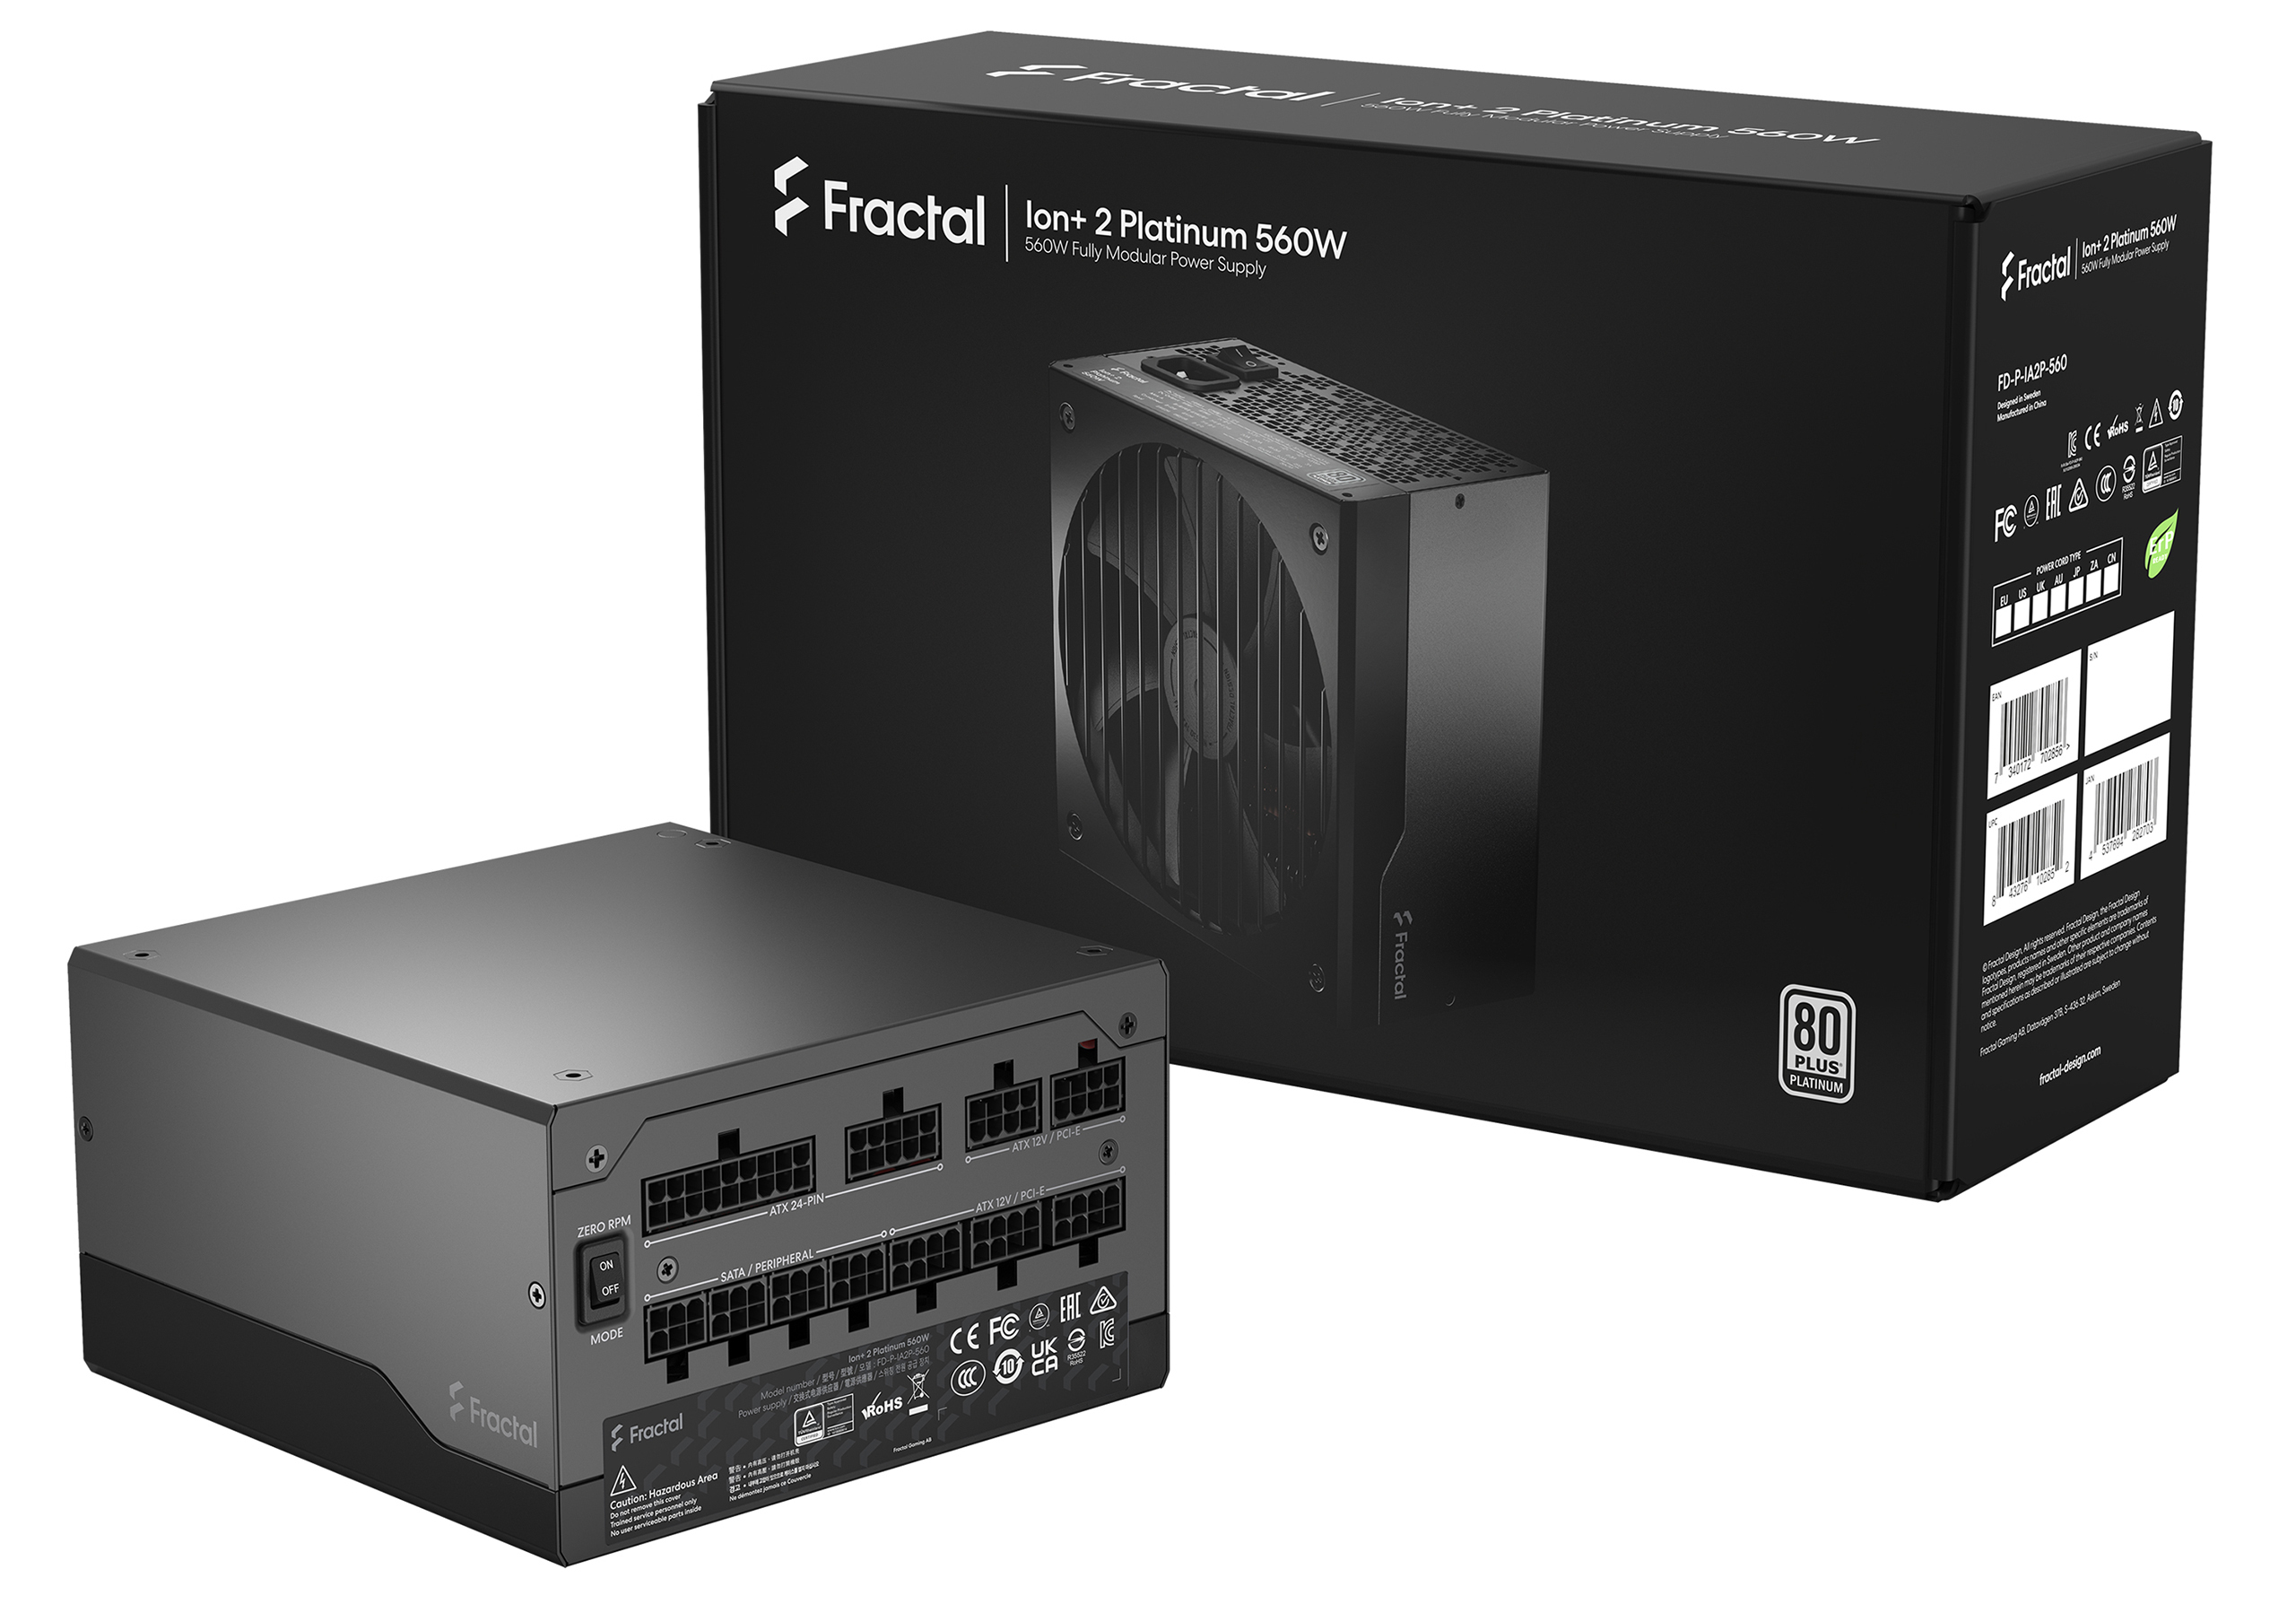 Fractal Design - Fonte Fractal Design Ion+ 2 560W 80+ Platinum Full Modular